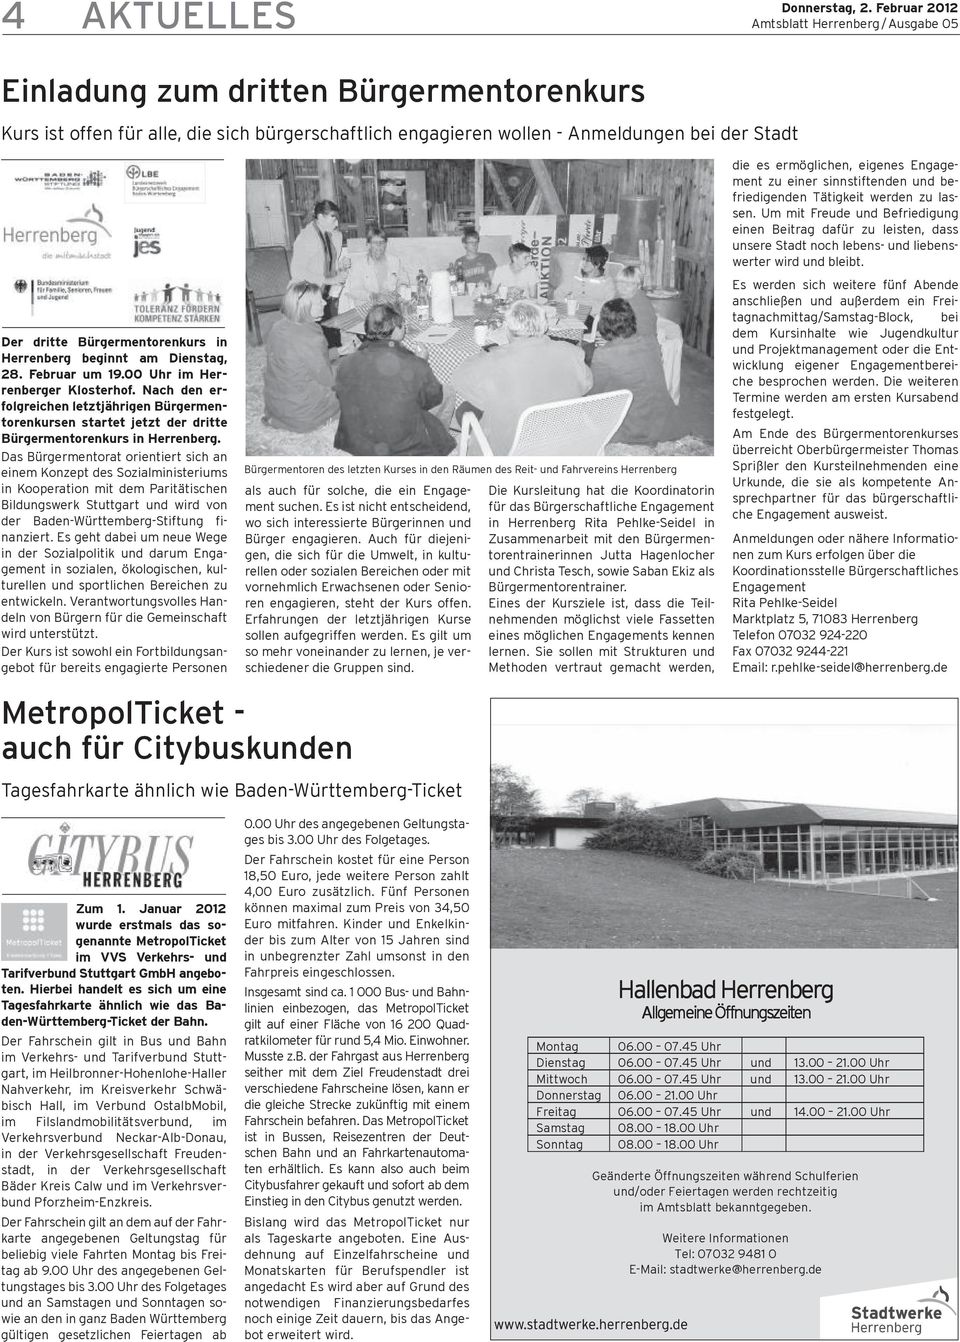 Das Bürgermentorat orientiert sich an einem Konzept des Sozialministeriums in Kooperation mit dem Paritätischen Bildungswerk Stuttgart und wird von der Baden-Württemberg-Stiftung finanziert.